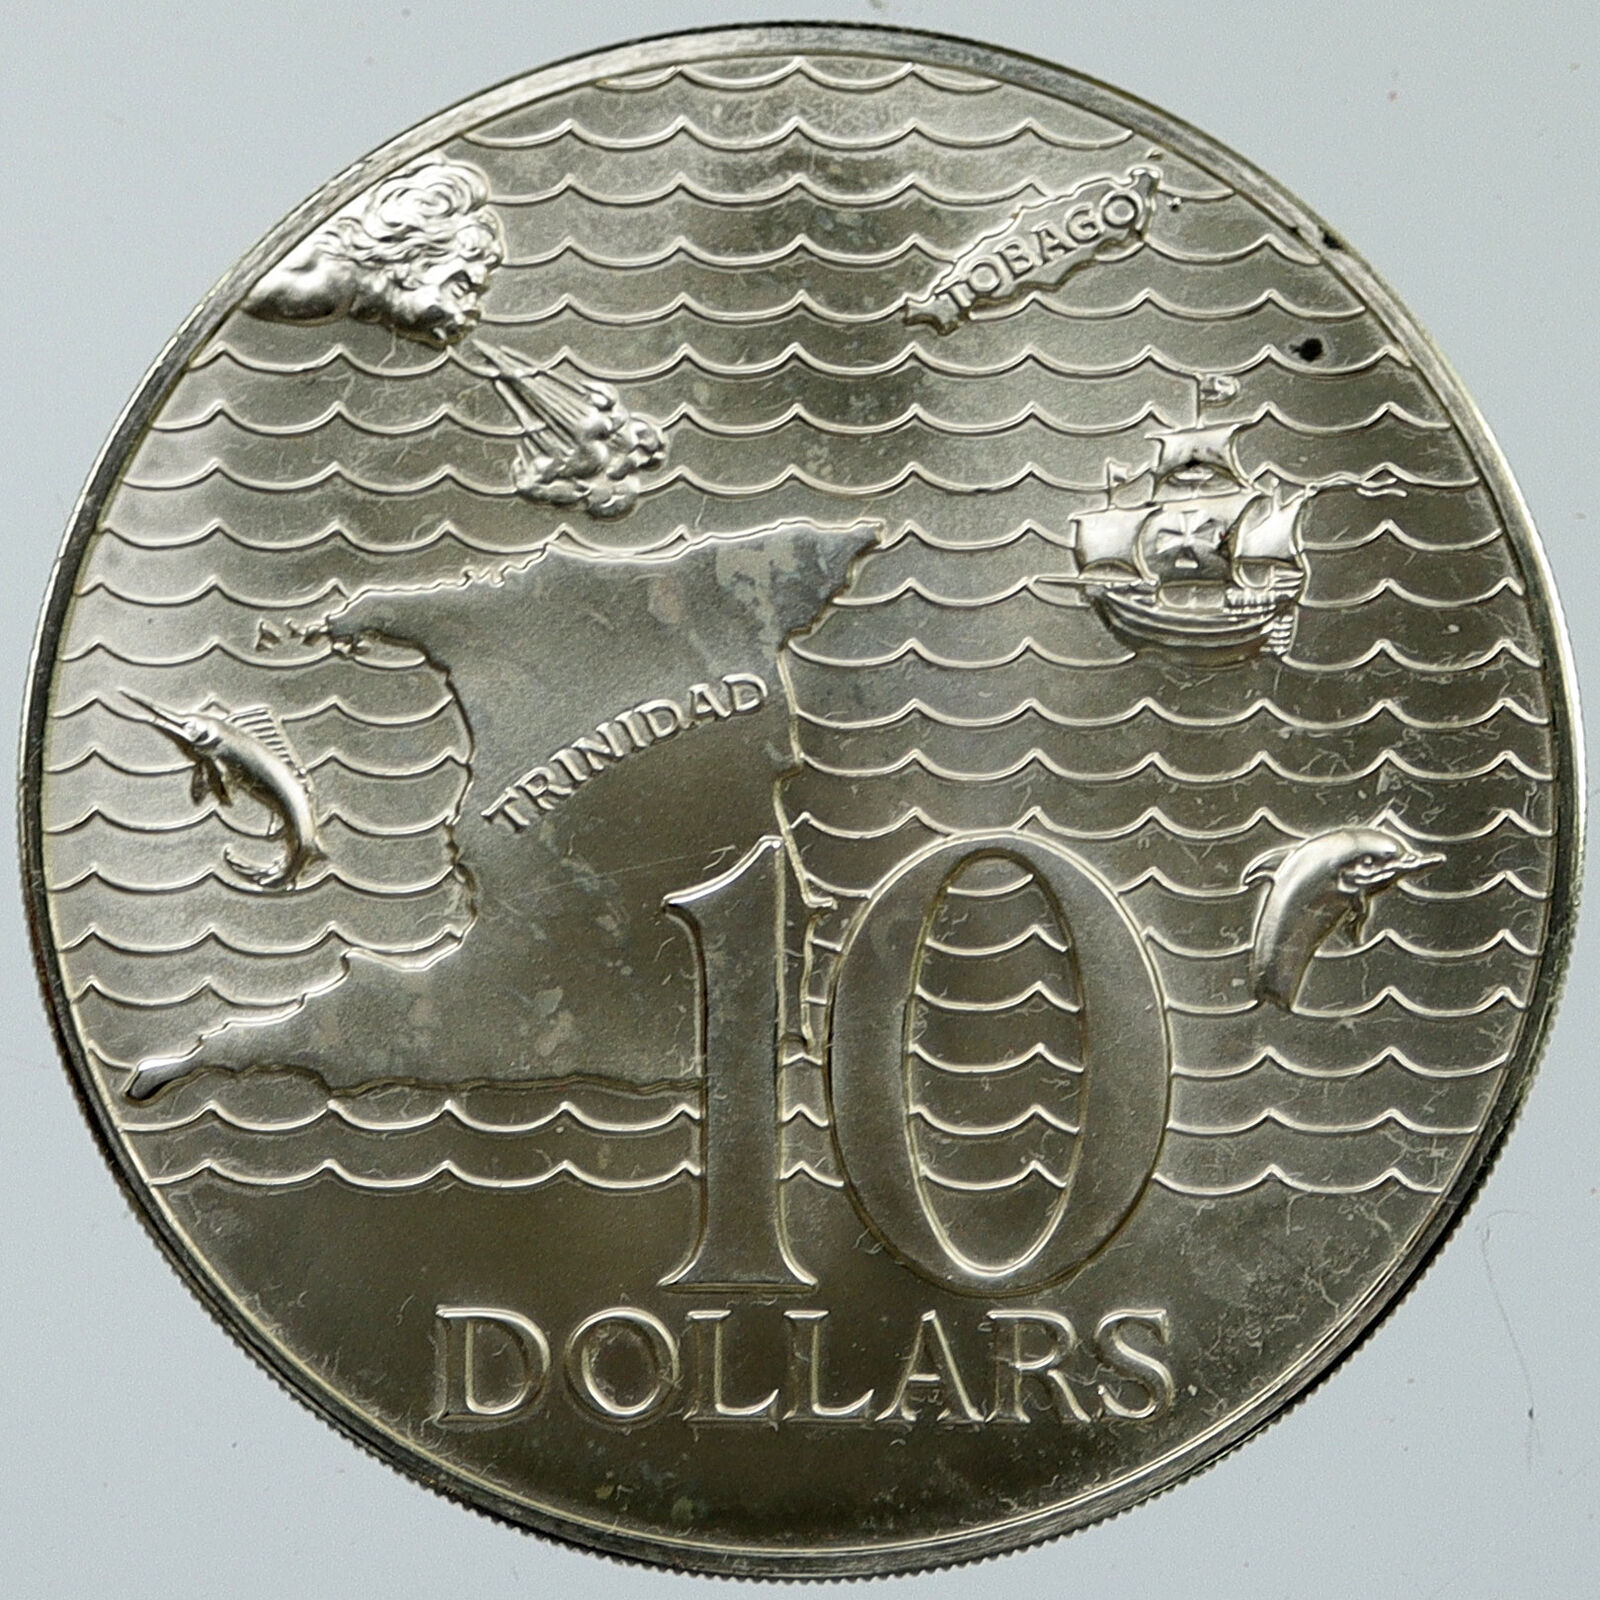 1973 TRINIDAD and TOBAGO Islands & Sea Large Vintage OLD Silver $10 Coin i116003